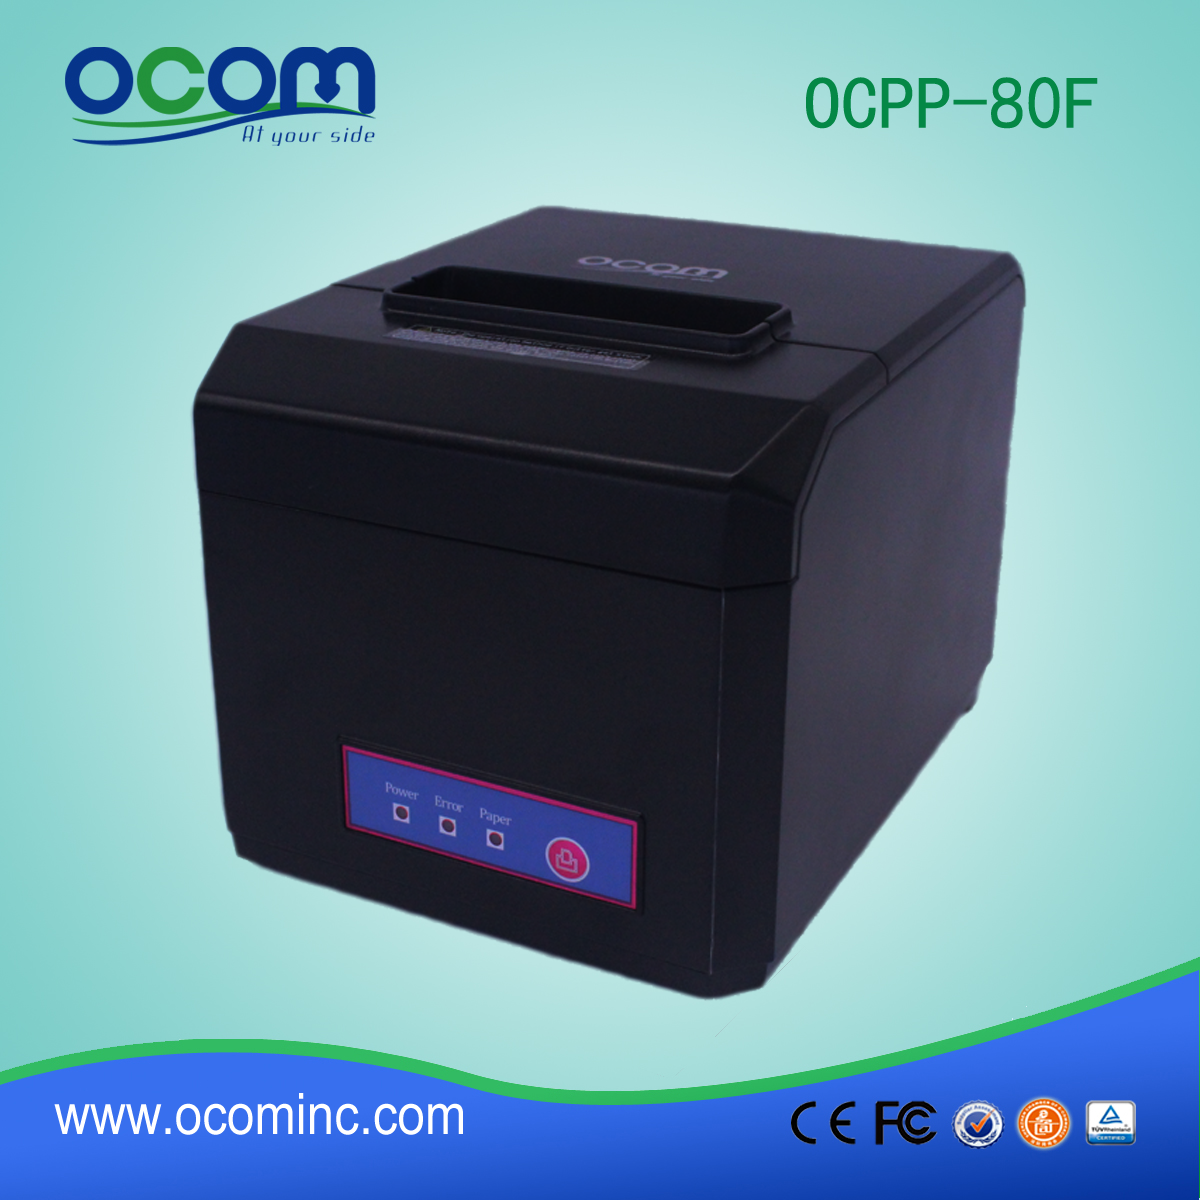 ОКПП-80Ф: дешевый 3-дюймовый POS-принтер с теплоотводом Bluetooth для андриод или iOS